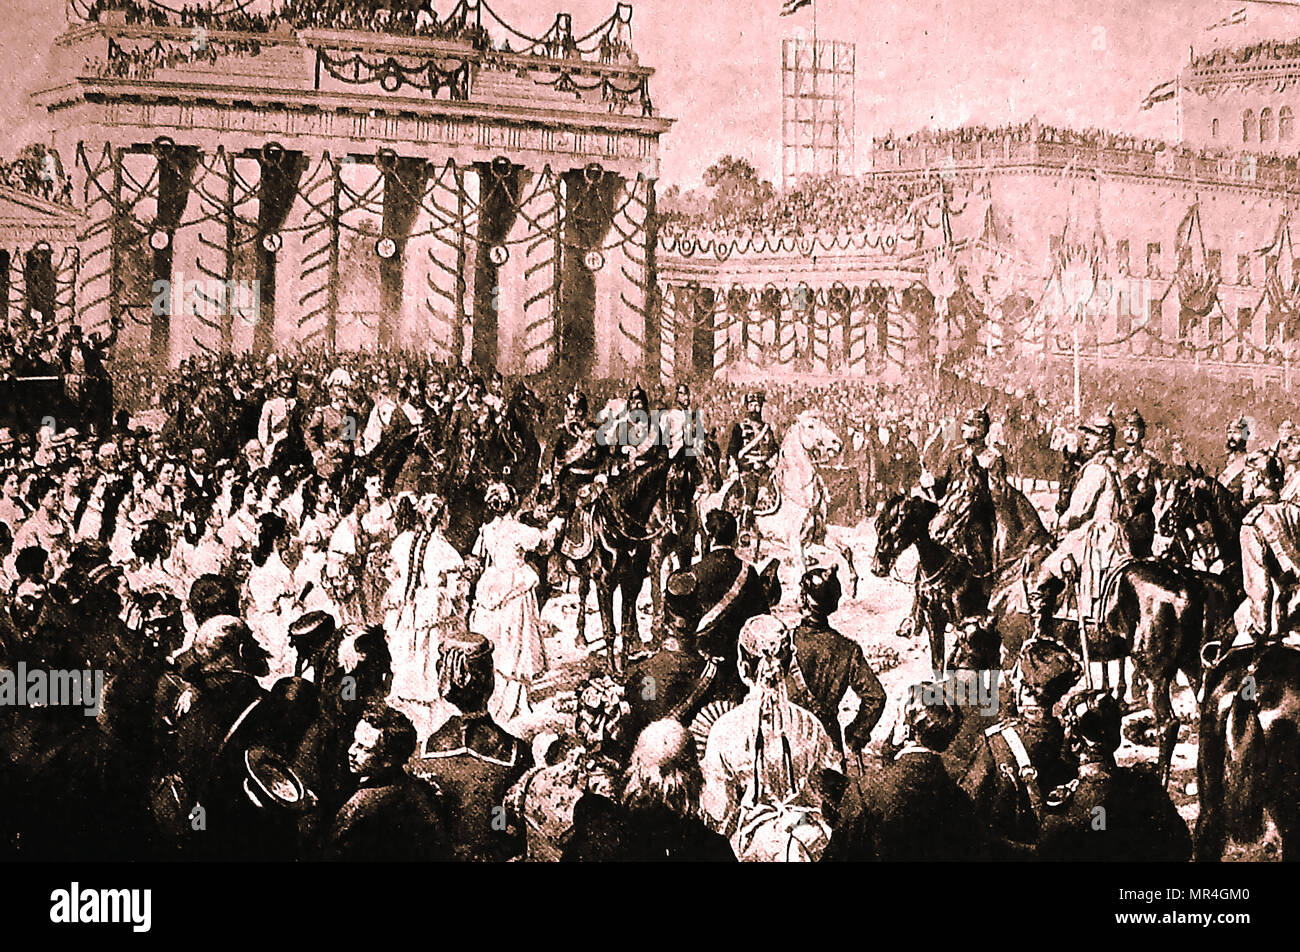 La conquête de l'Allemagne, l'empereur Guillaume (Wilhelm), j'ai entrer triomphalement juin 1871 Berlin - également connu sous le nom de William Frederick Louis de Hohenzollern, Wilhelm Friedrich Ludwig von Hohenzollern et roi de Prusse Banque D'Images